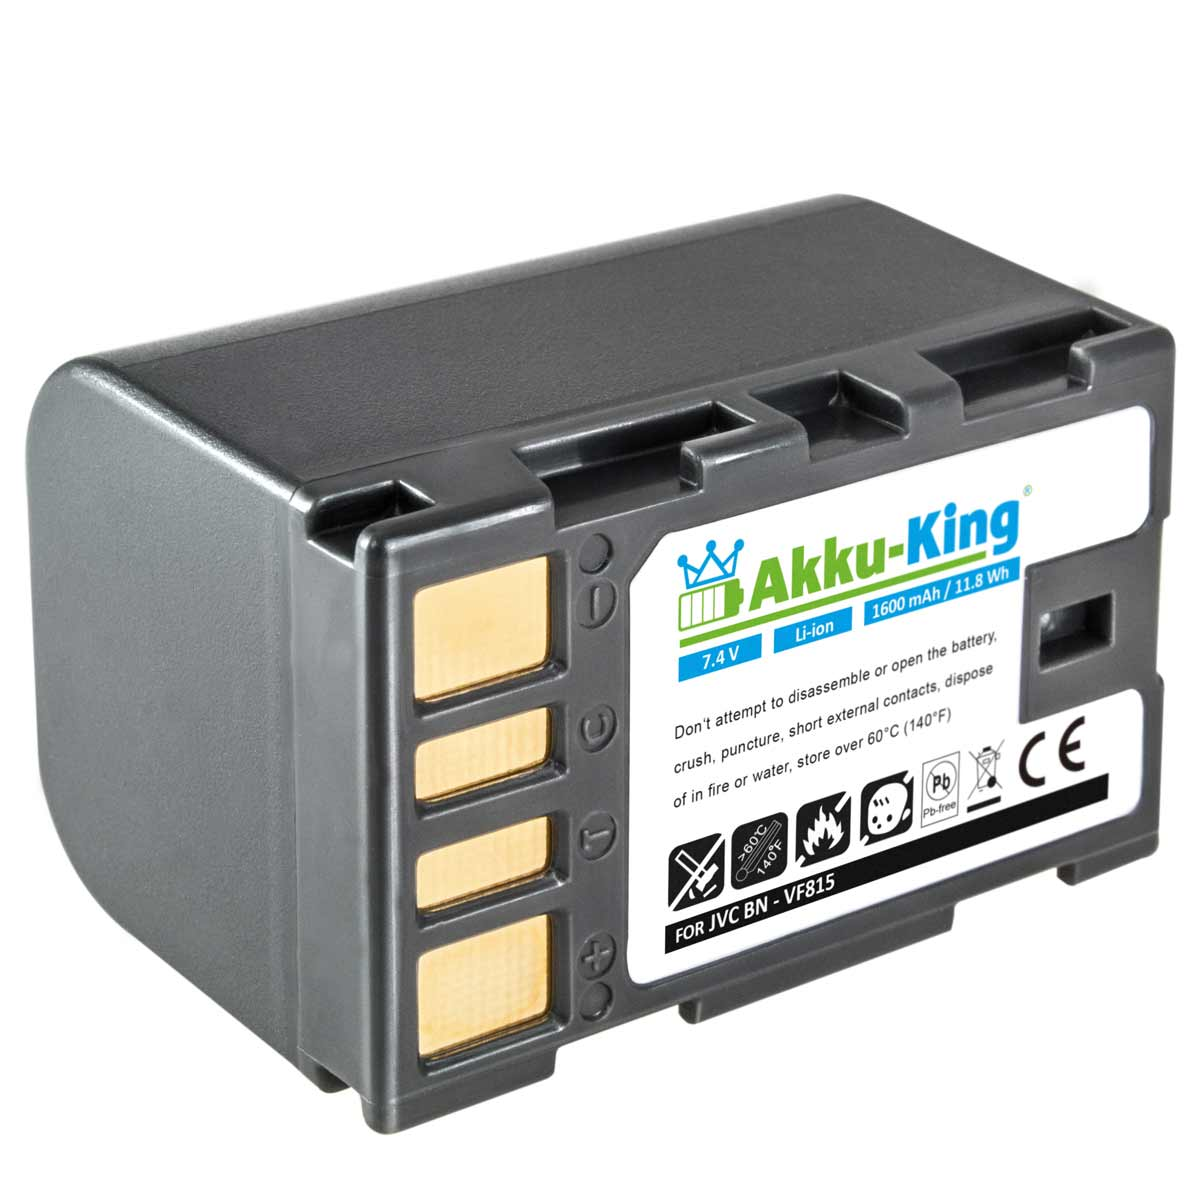 kompatibel 1600mAh mit Volt, JVC Li-Ion Kamera-Akku, Akku 7.4 BN-VF815 AKKU-KING